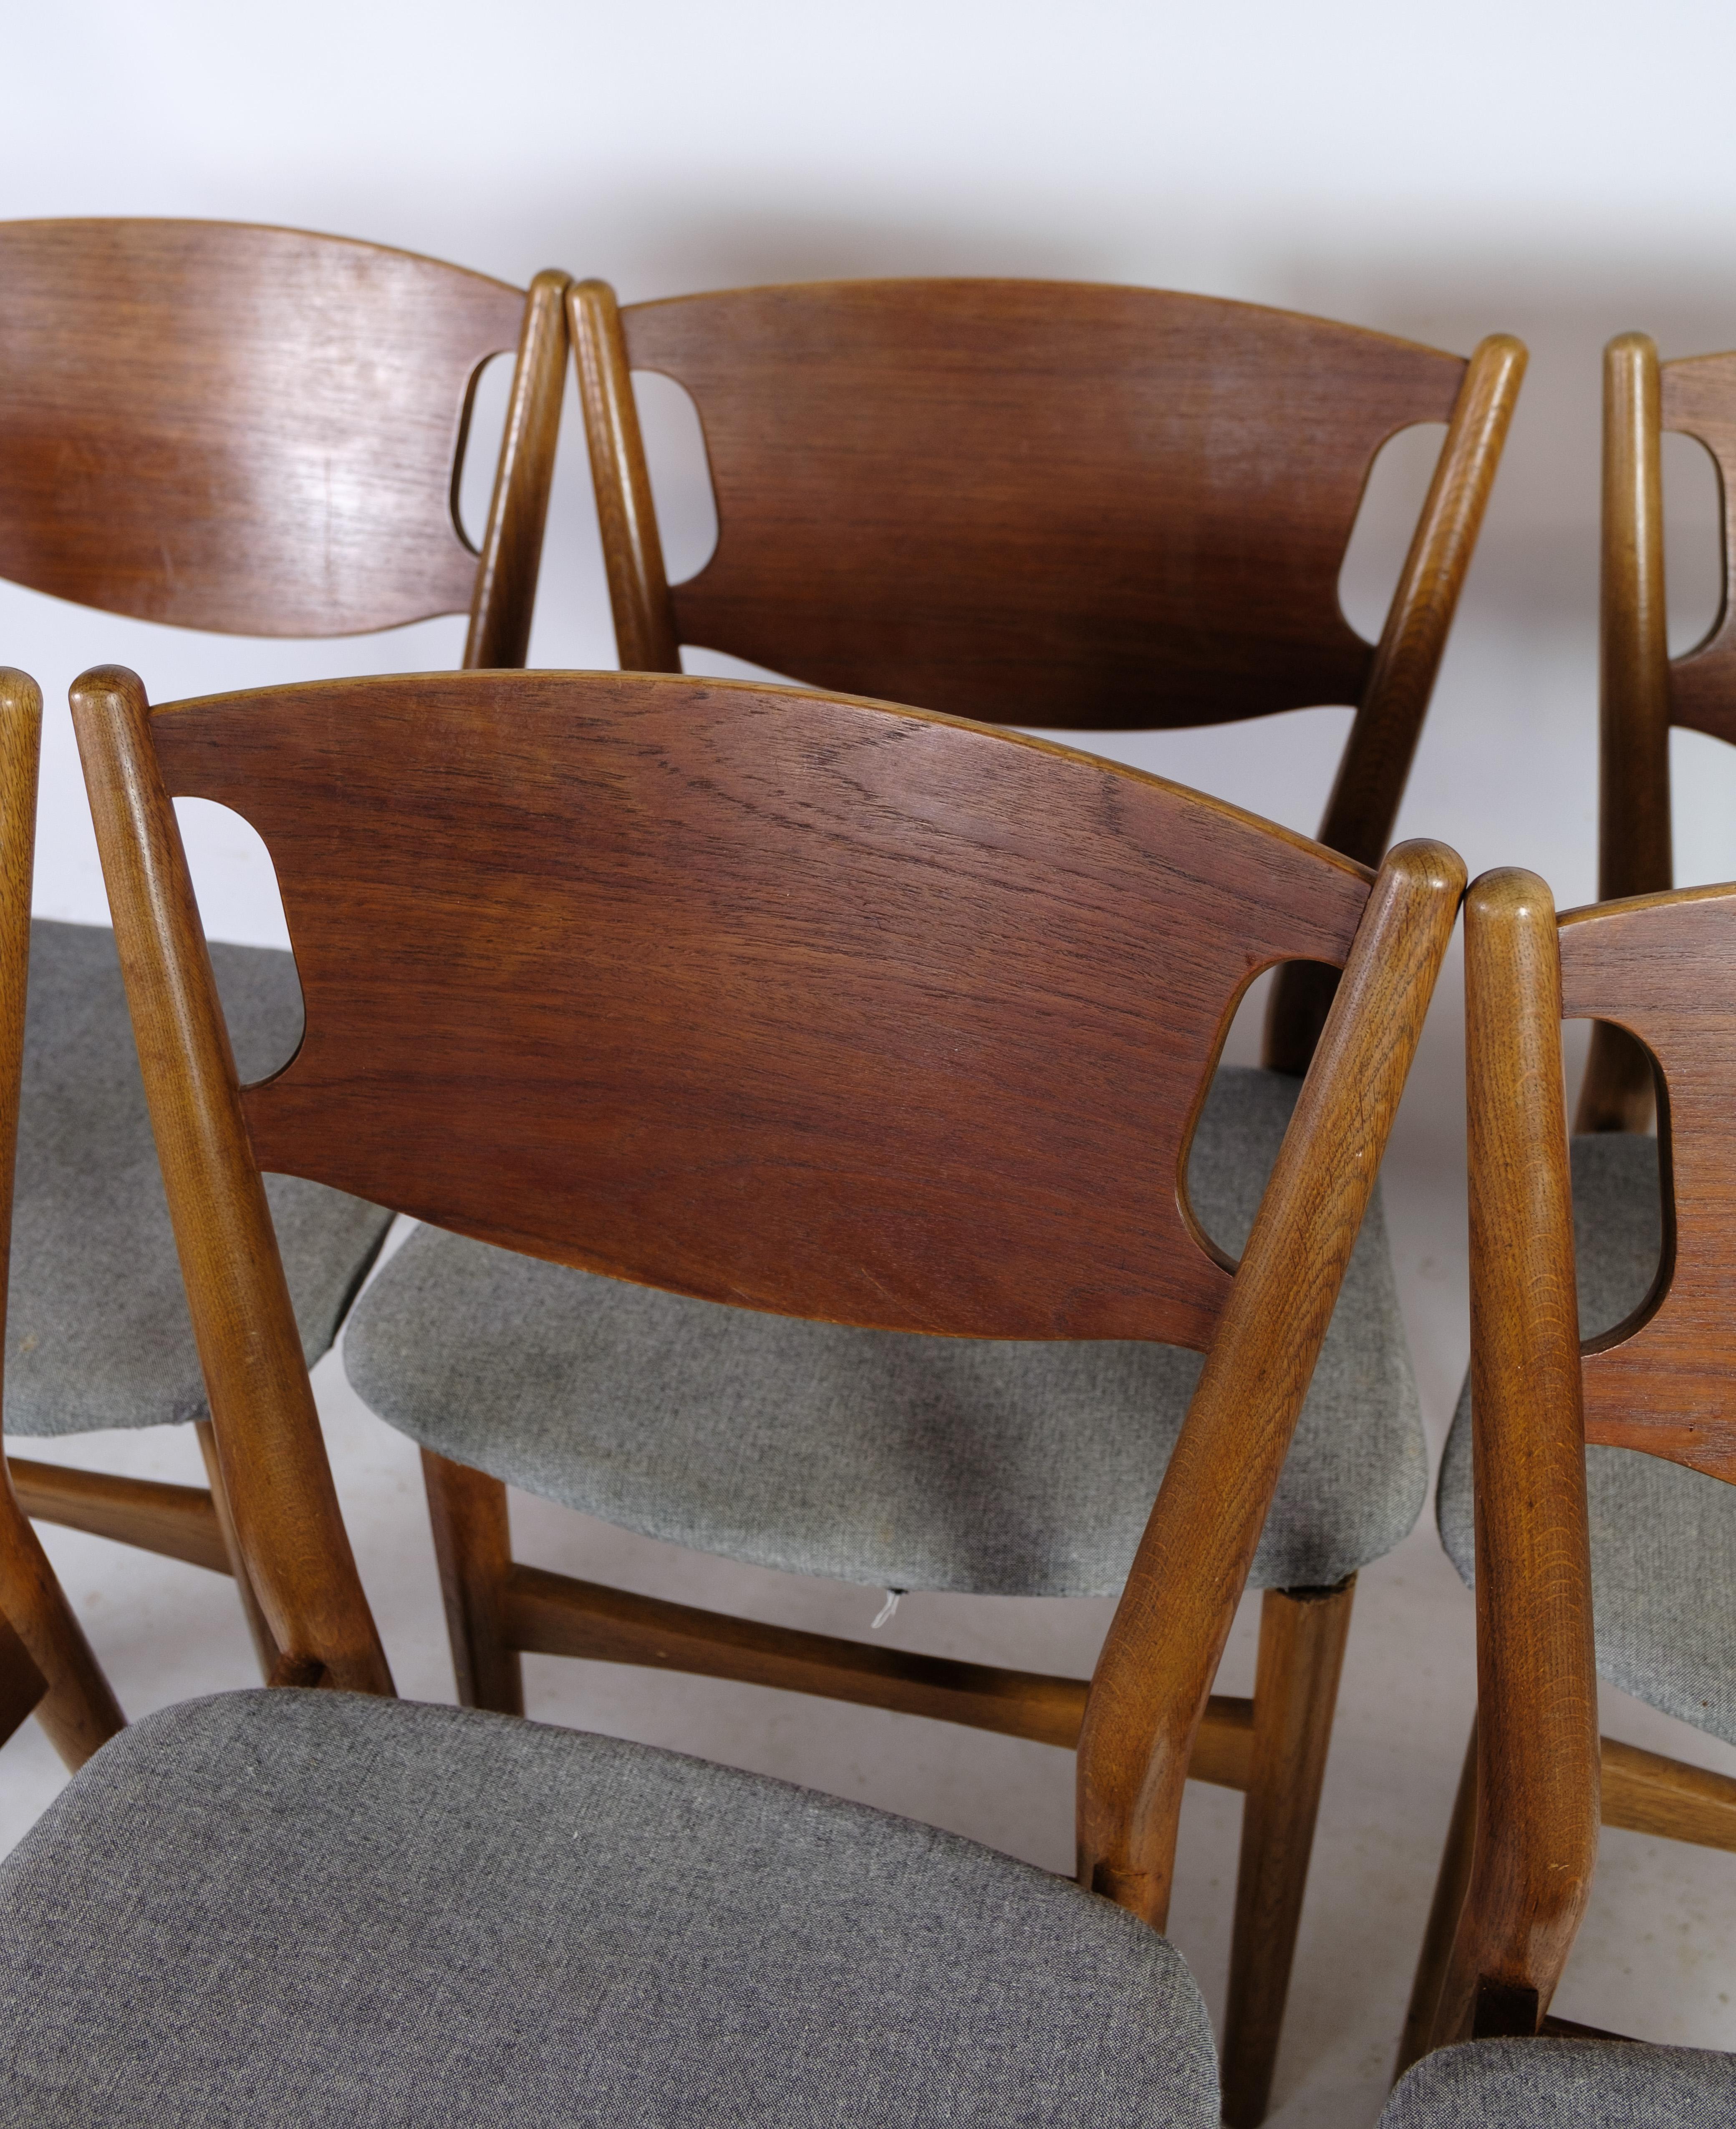 Un ensemble de six chaises de salle à manger, le modèle 42A, conçu par l'estimé Helge Sibast dans les années 1950, offre un ajout intemporel à tout espace de salle à manger. Fabriquées en chêne et en teck, ces chaises mettent en valeur l'élégance